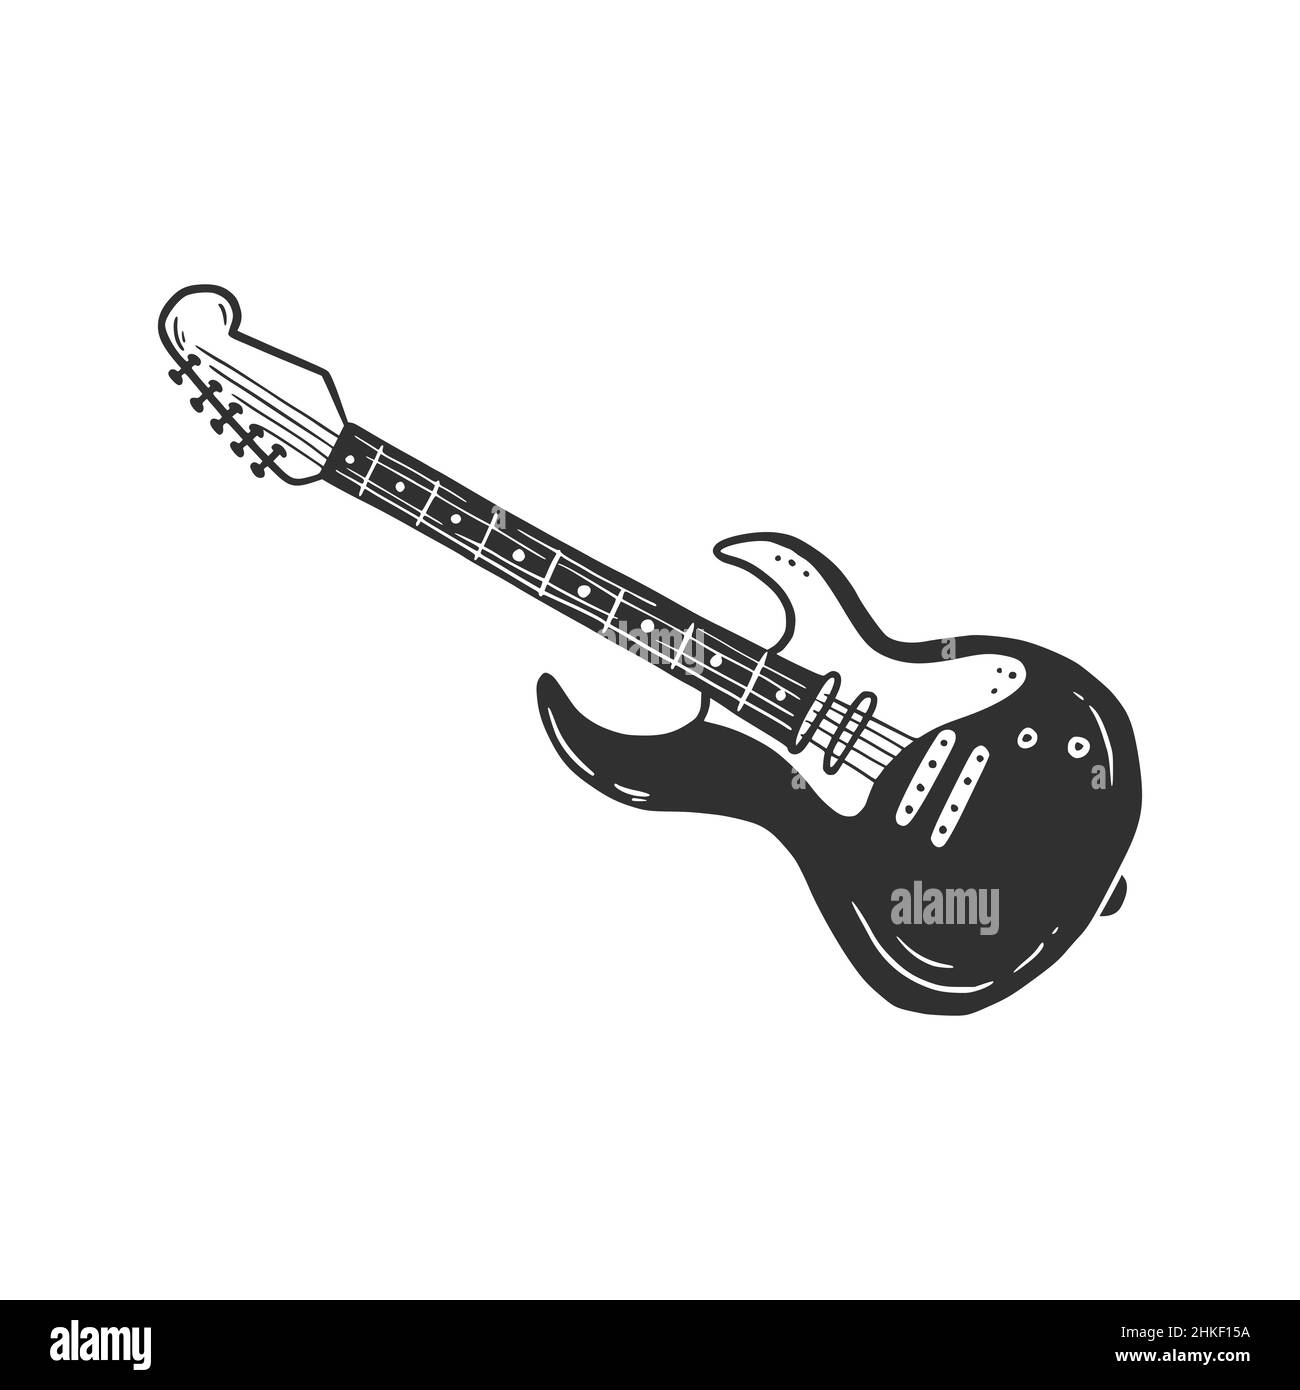 Juguete De Guitarra Aislado Sobre Un Fondo Blanco, Ilustración Vectorial  Ilustraciones svg, vectoriales, clip art vectorizado libre de derechos.  Image 86746252